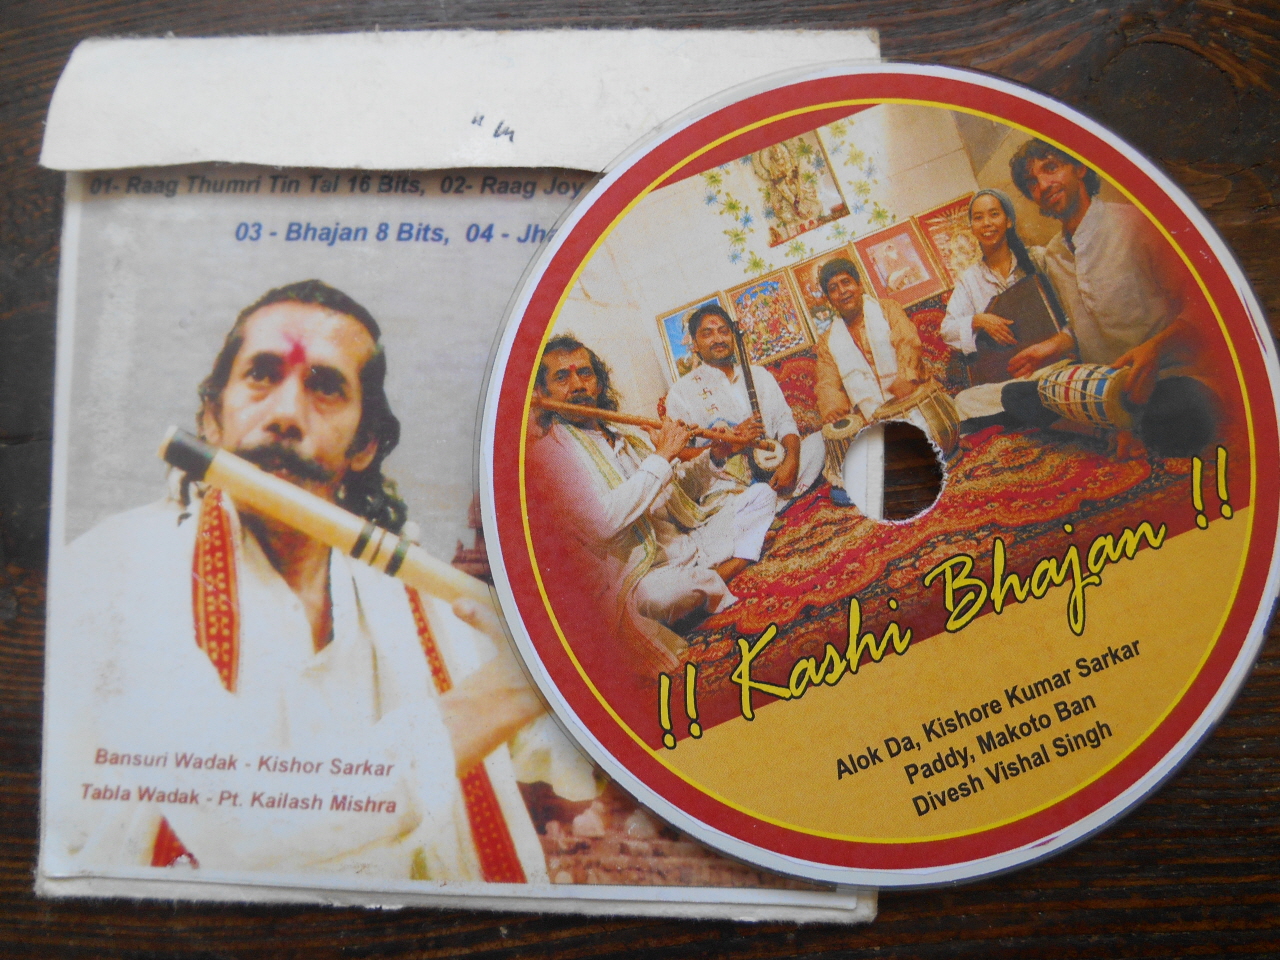 숙소 근처 라이브 카페에서 인도의 전통음악을 연주하고 있는 인도 사내의 음반.자존심 강한 그와 서너 차례 만났다.